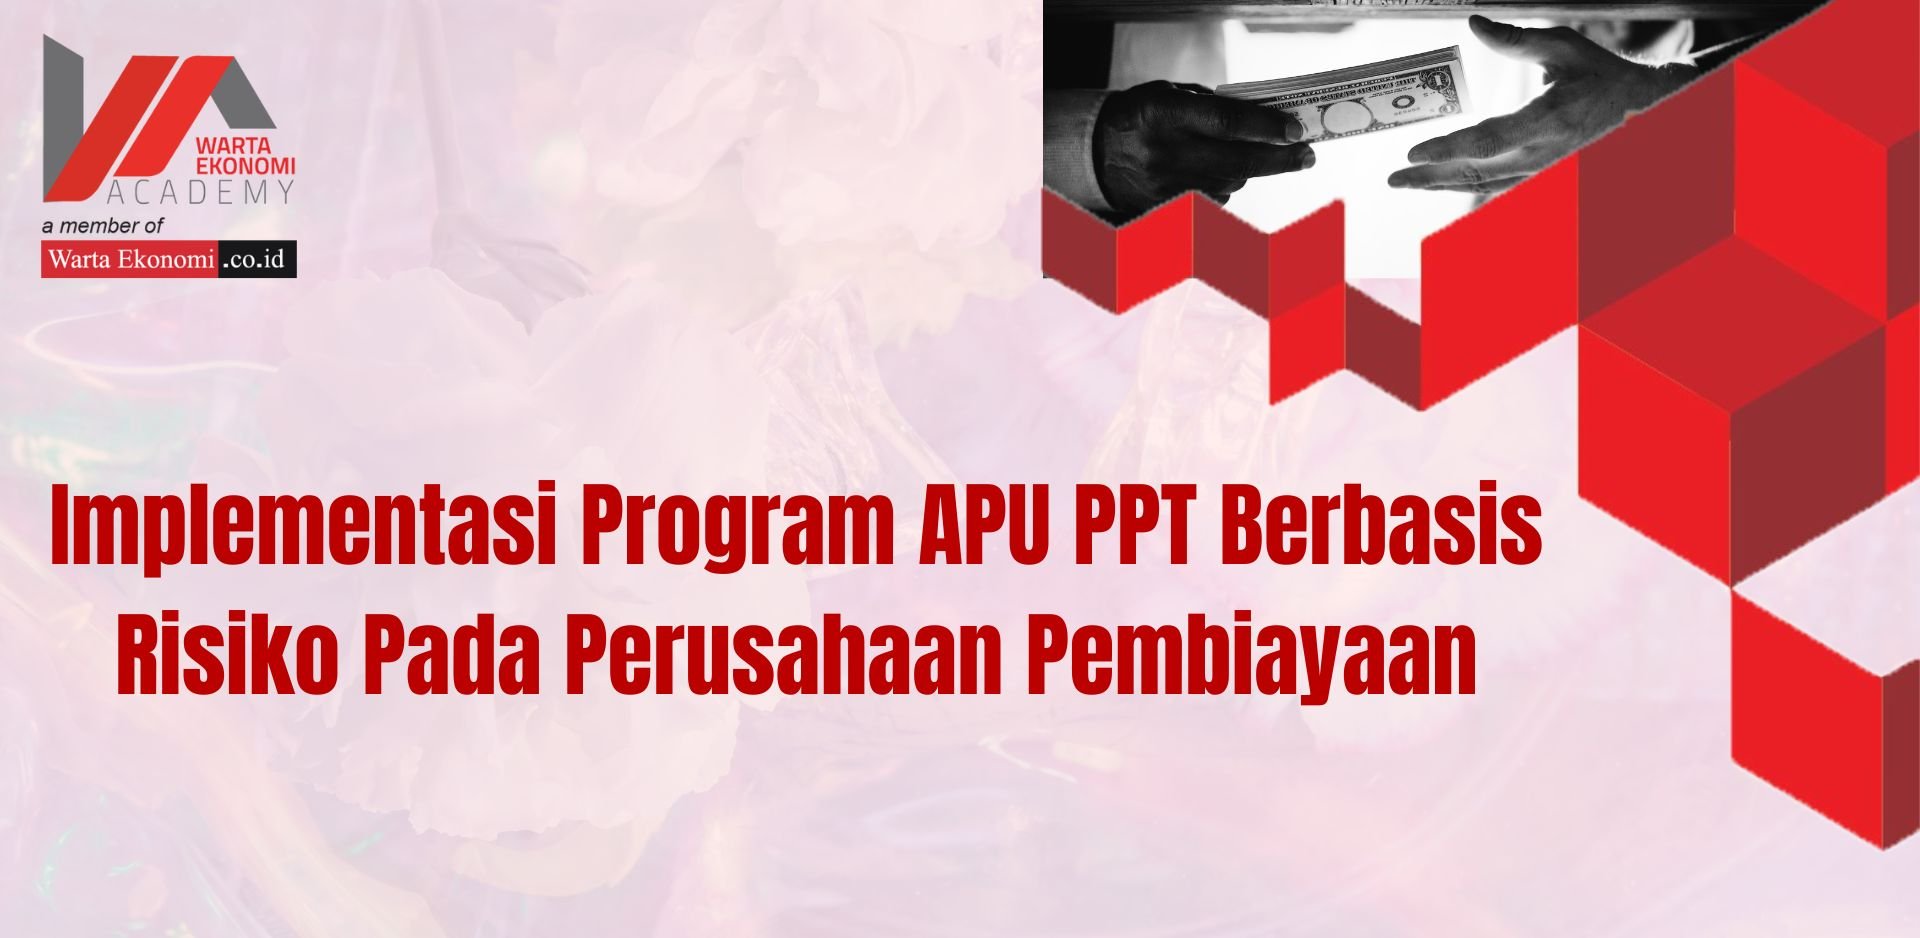 Implementasi Program APU PPT Berbasis Risiko Pada Perusahaan Pembiayaan